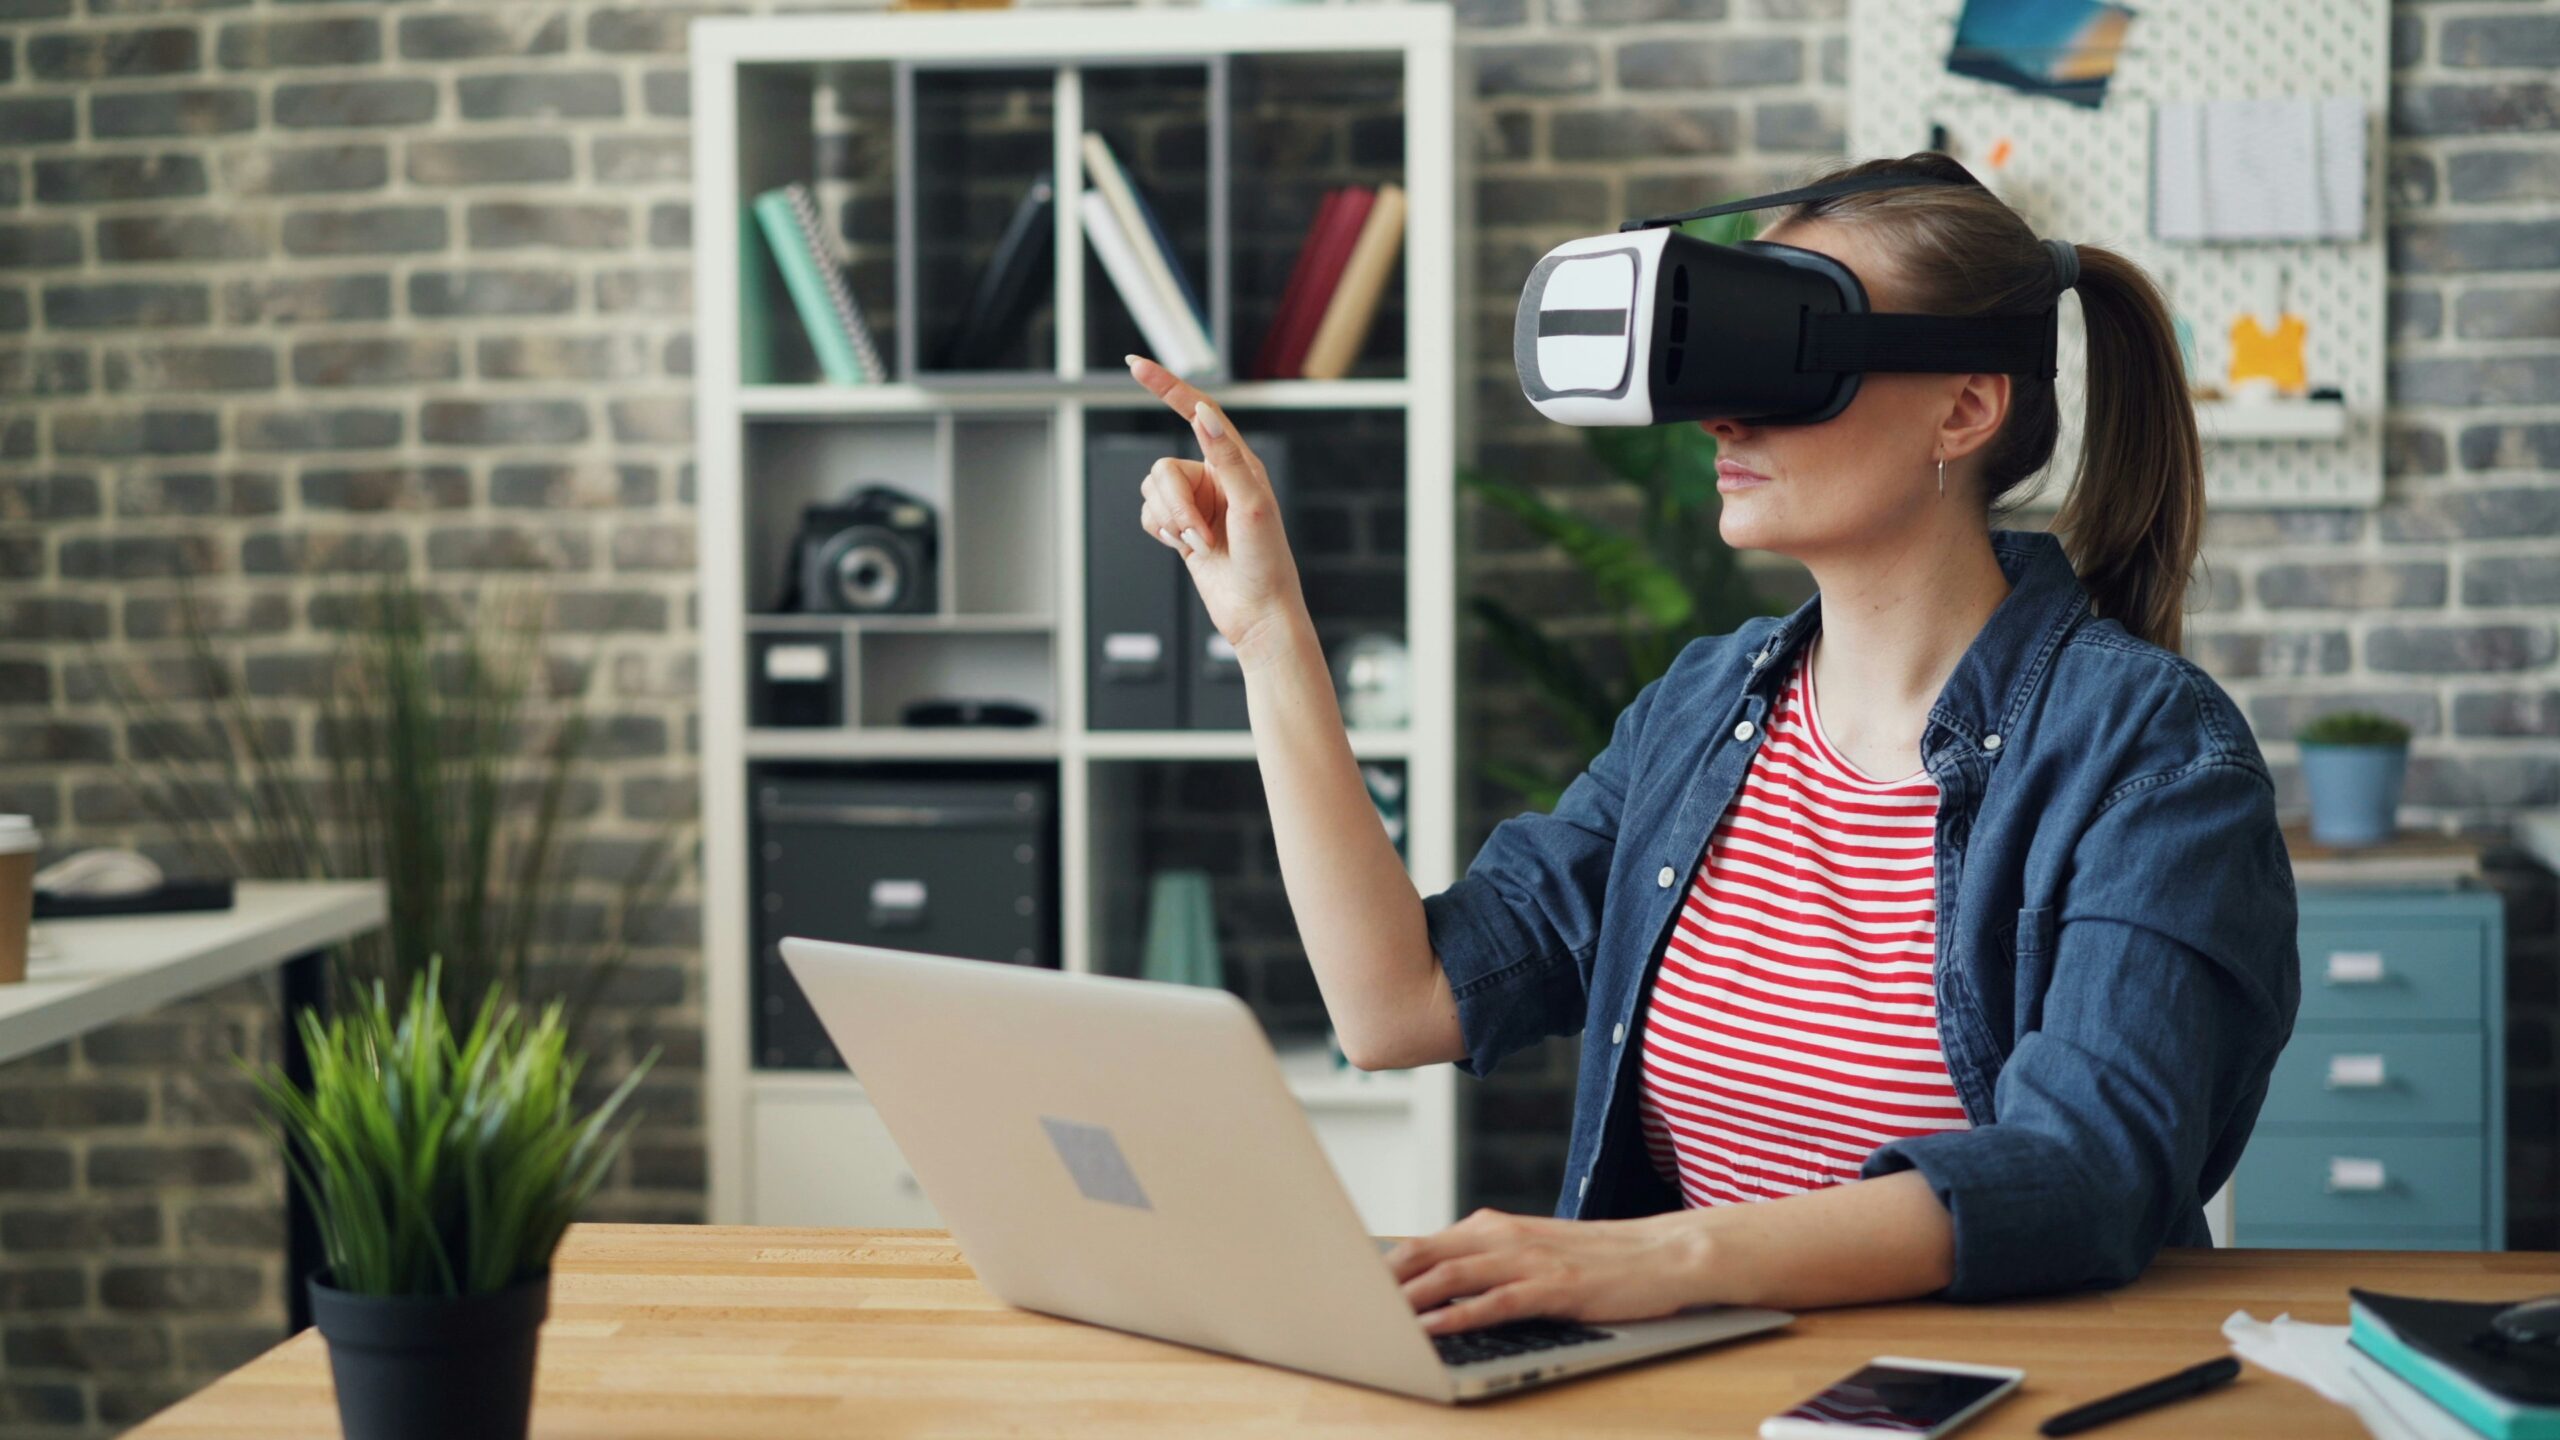 Tecnologie emergenti nella formazione aziendale: realtà virtuale e AI